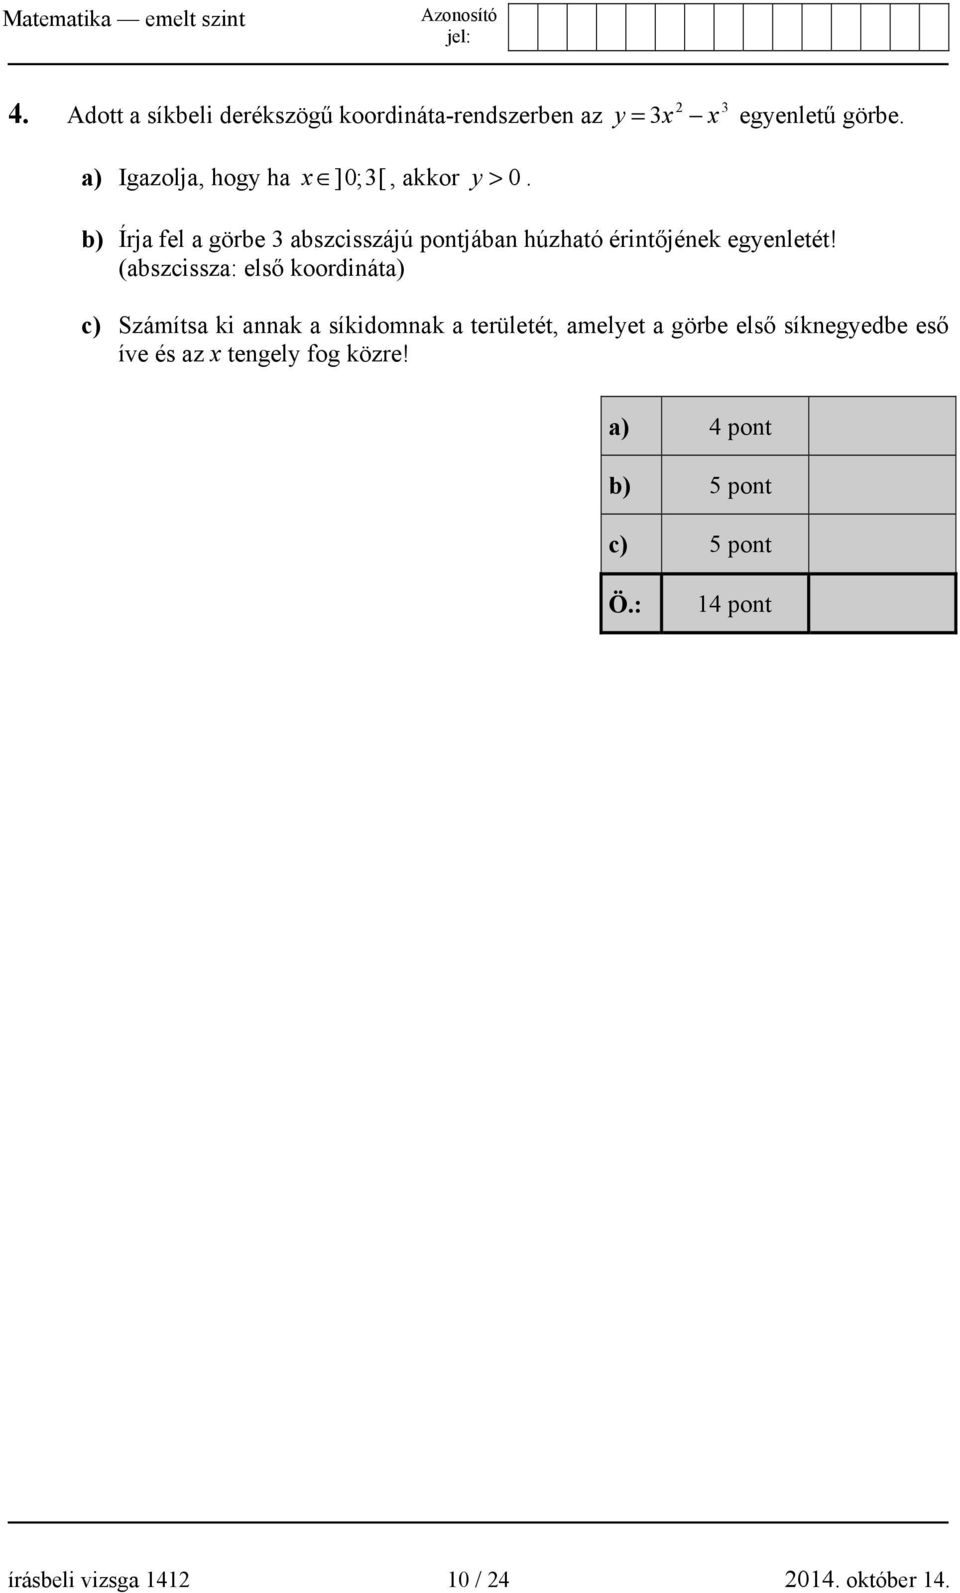 b) Írja fel a görbe 3 abszcisszájú pontjában húzható érintőjének egyenletét!